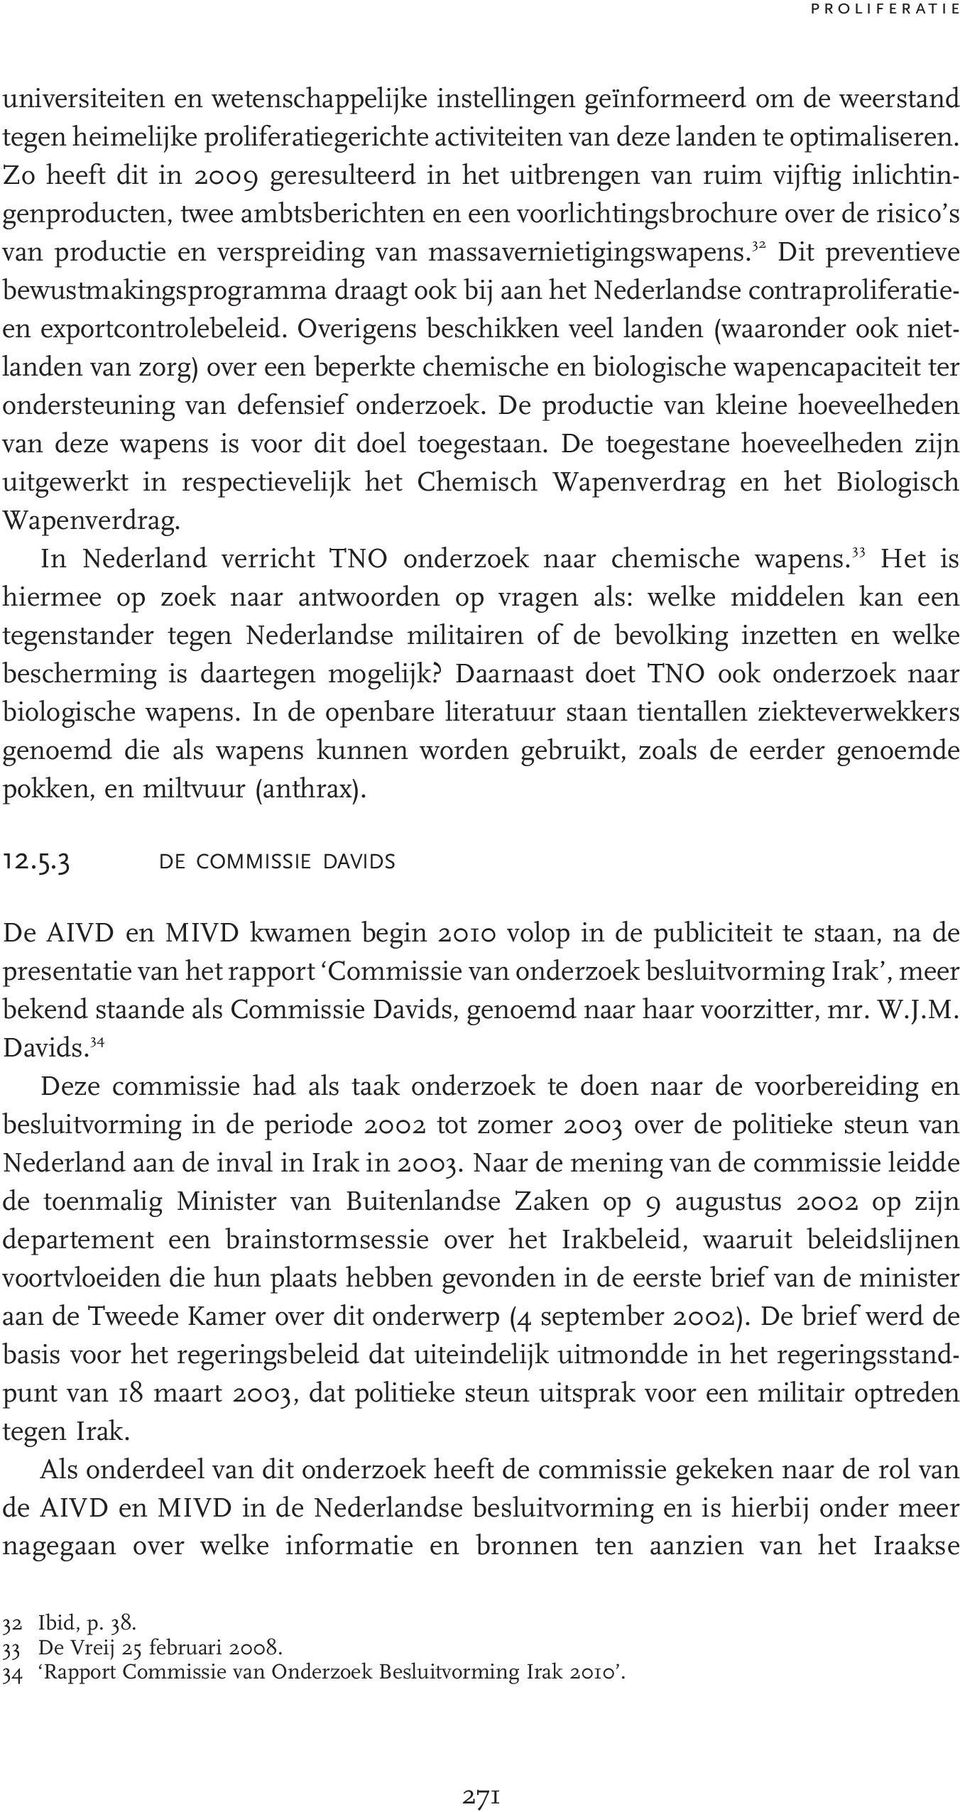 massavernietigingswapens. 32 Dit preventieve bewustmakingsprogramma draagt ook bij aan het Nederlandse contraproliferatieen exportcontrolebeleid.